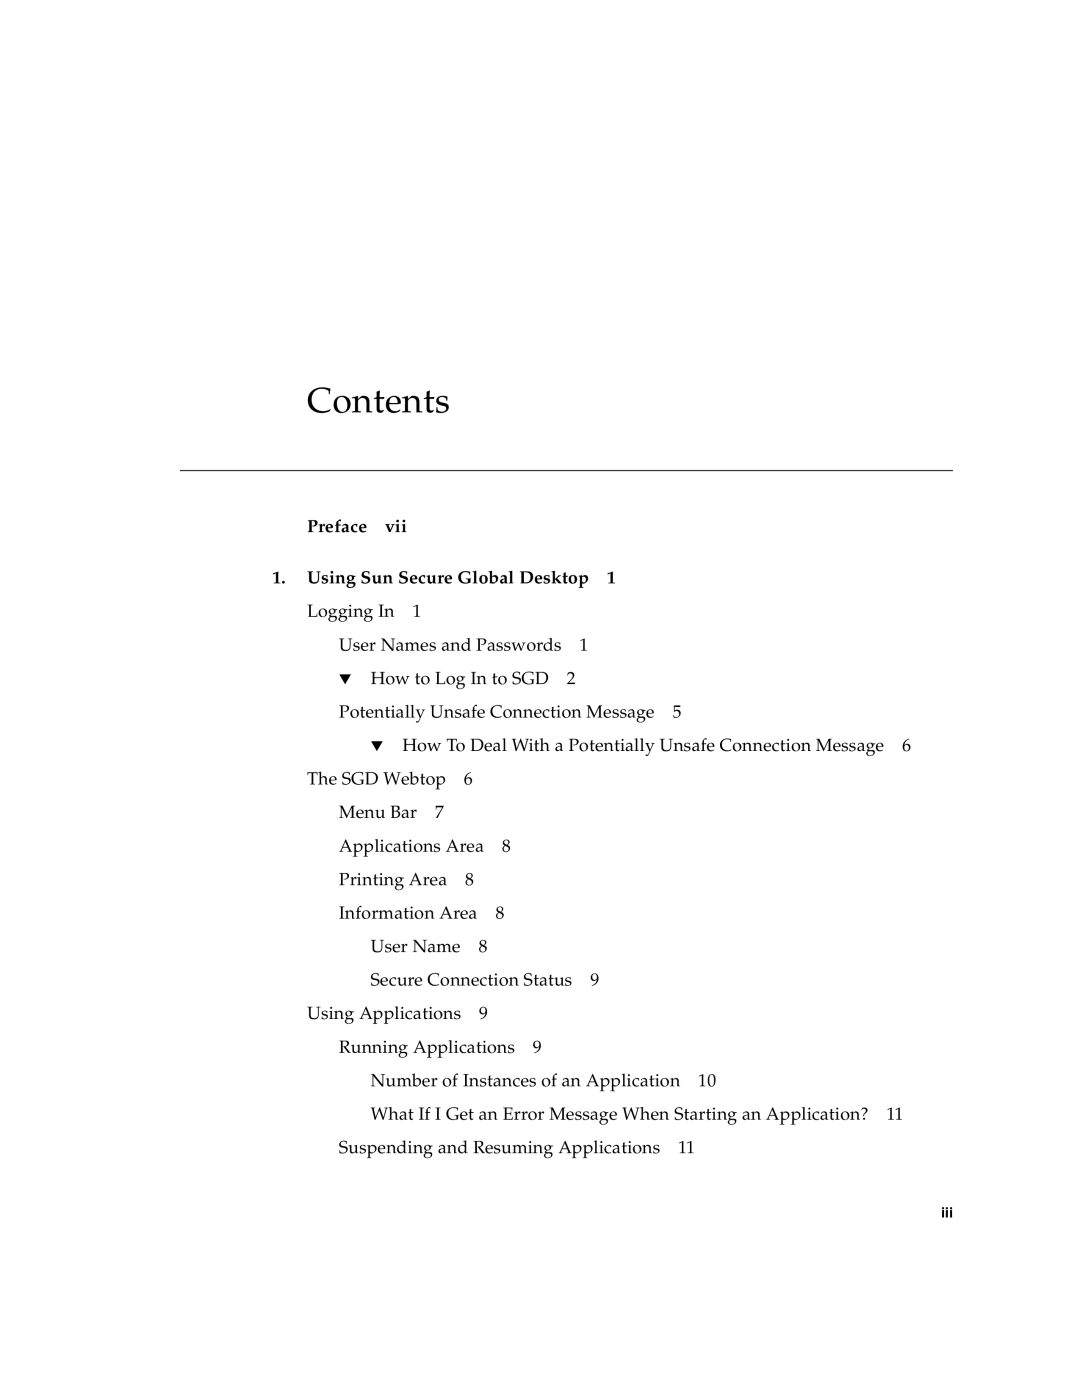 Sun Microsystems 4.5 manual Contents, Preface, Using Sun Secure Global Desktop 